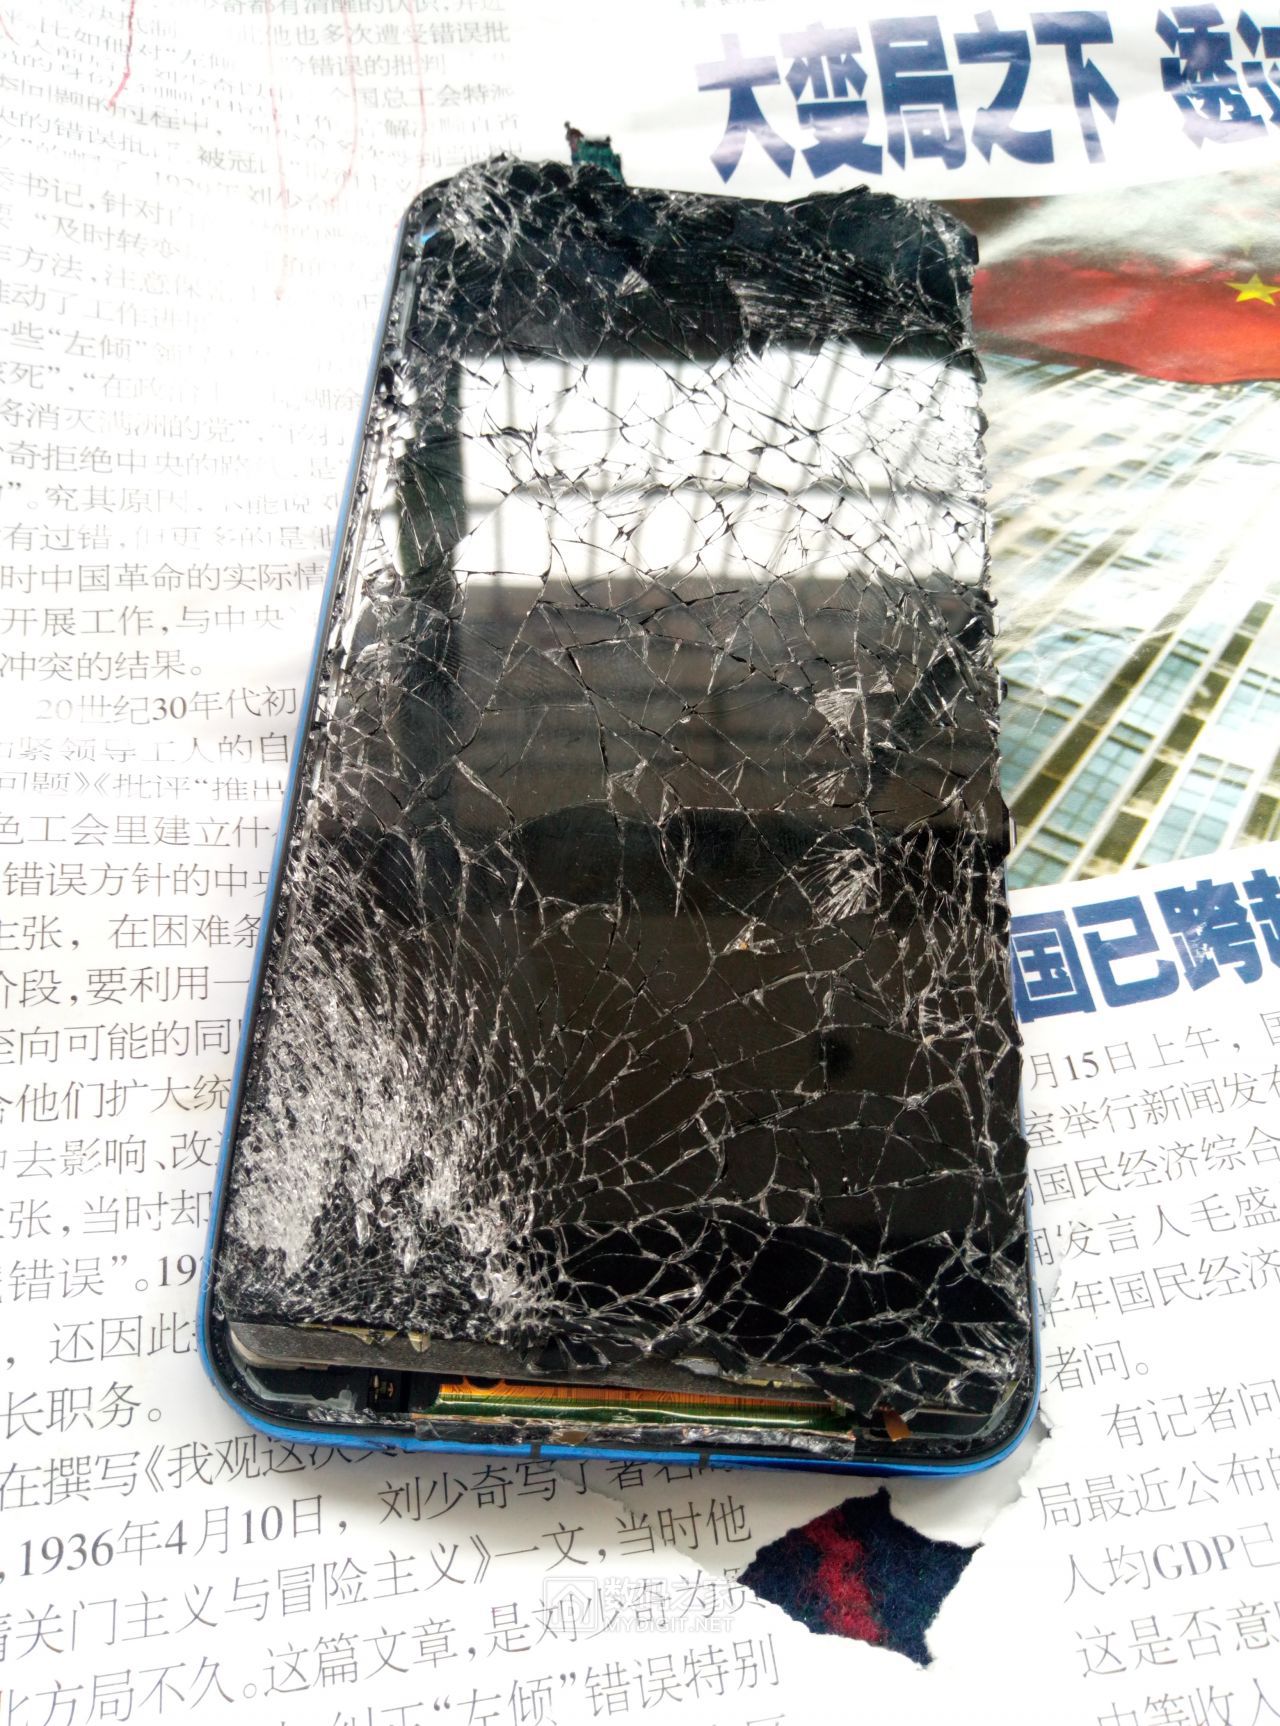 苹果手机屏幕摔碎了 _排行榜大全